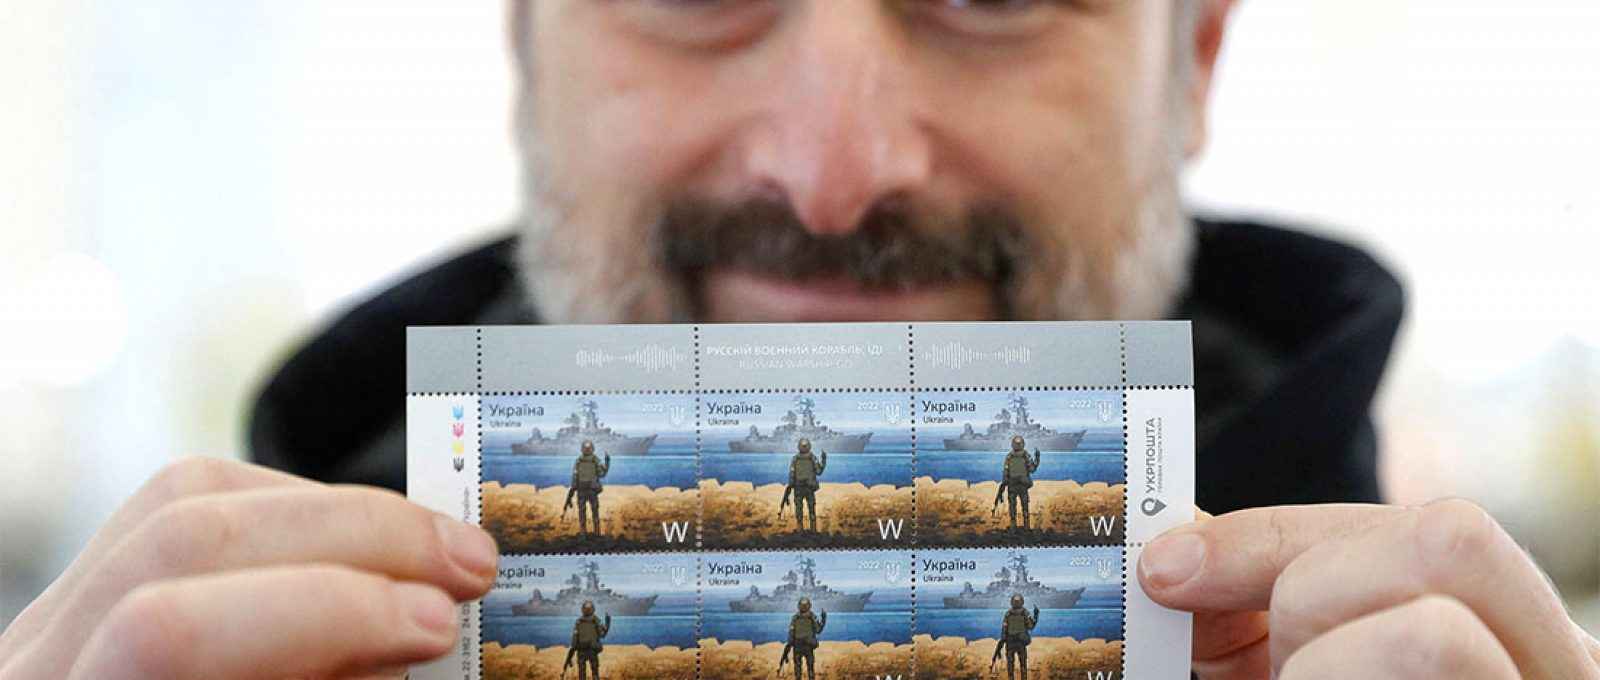 Ihor Smilianskyi, CEO do correio ucraniano, segura os novos selos postais que imortalizam a famosa altercação na Ilha das Cobras entre forças russas e ucranianas (Valentyn Ogirenko/Reuters).